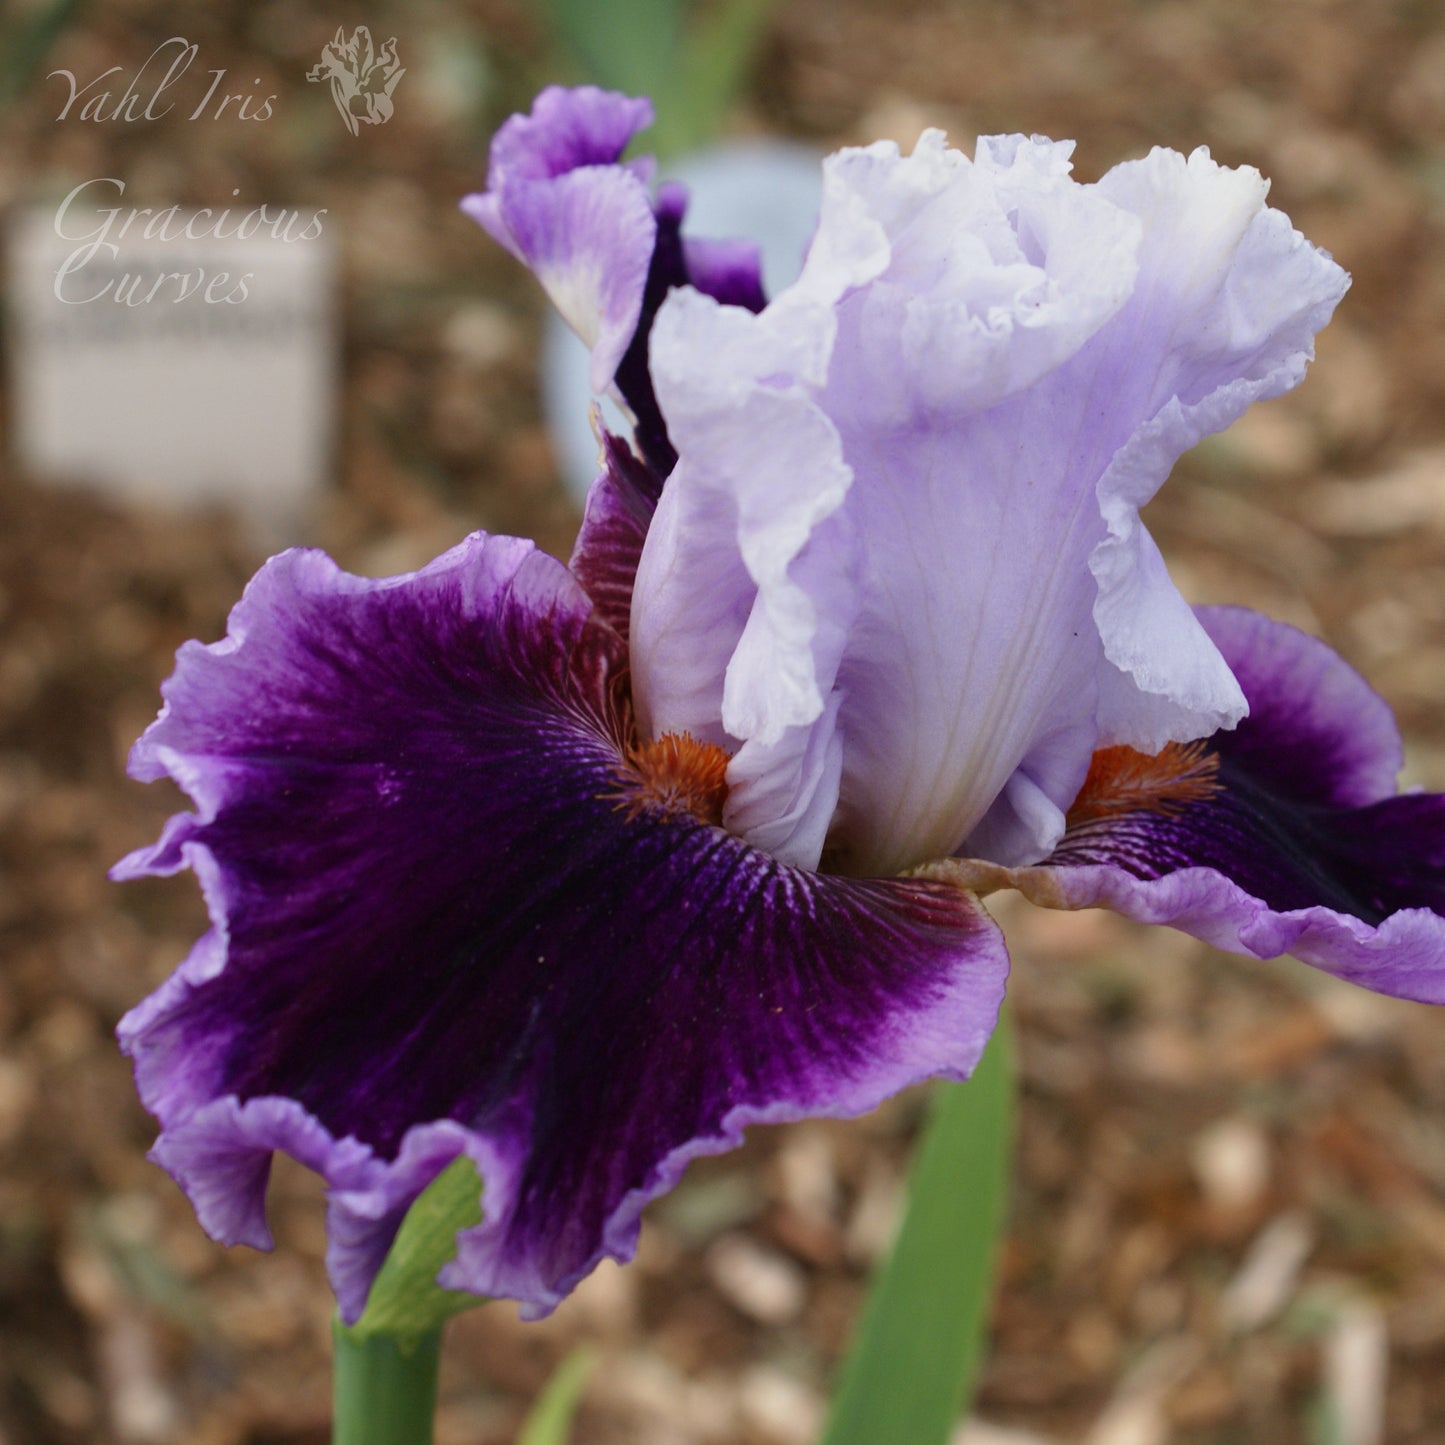 Gracious Curves - Tall Bearded Iris